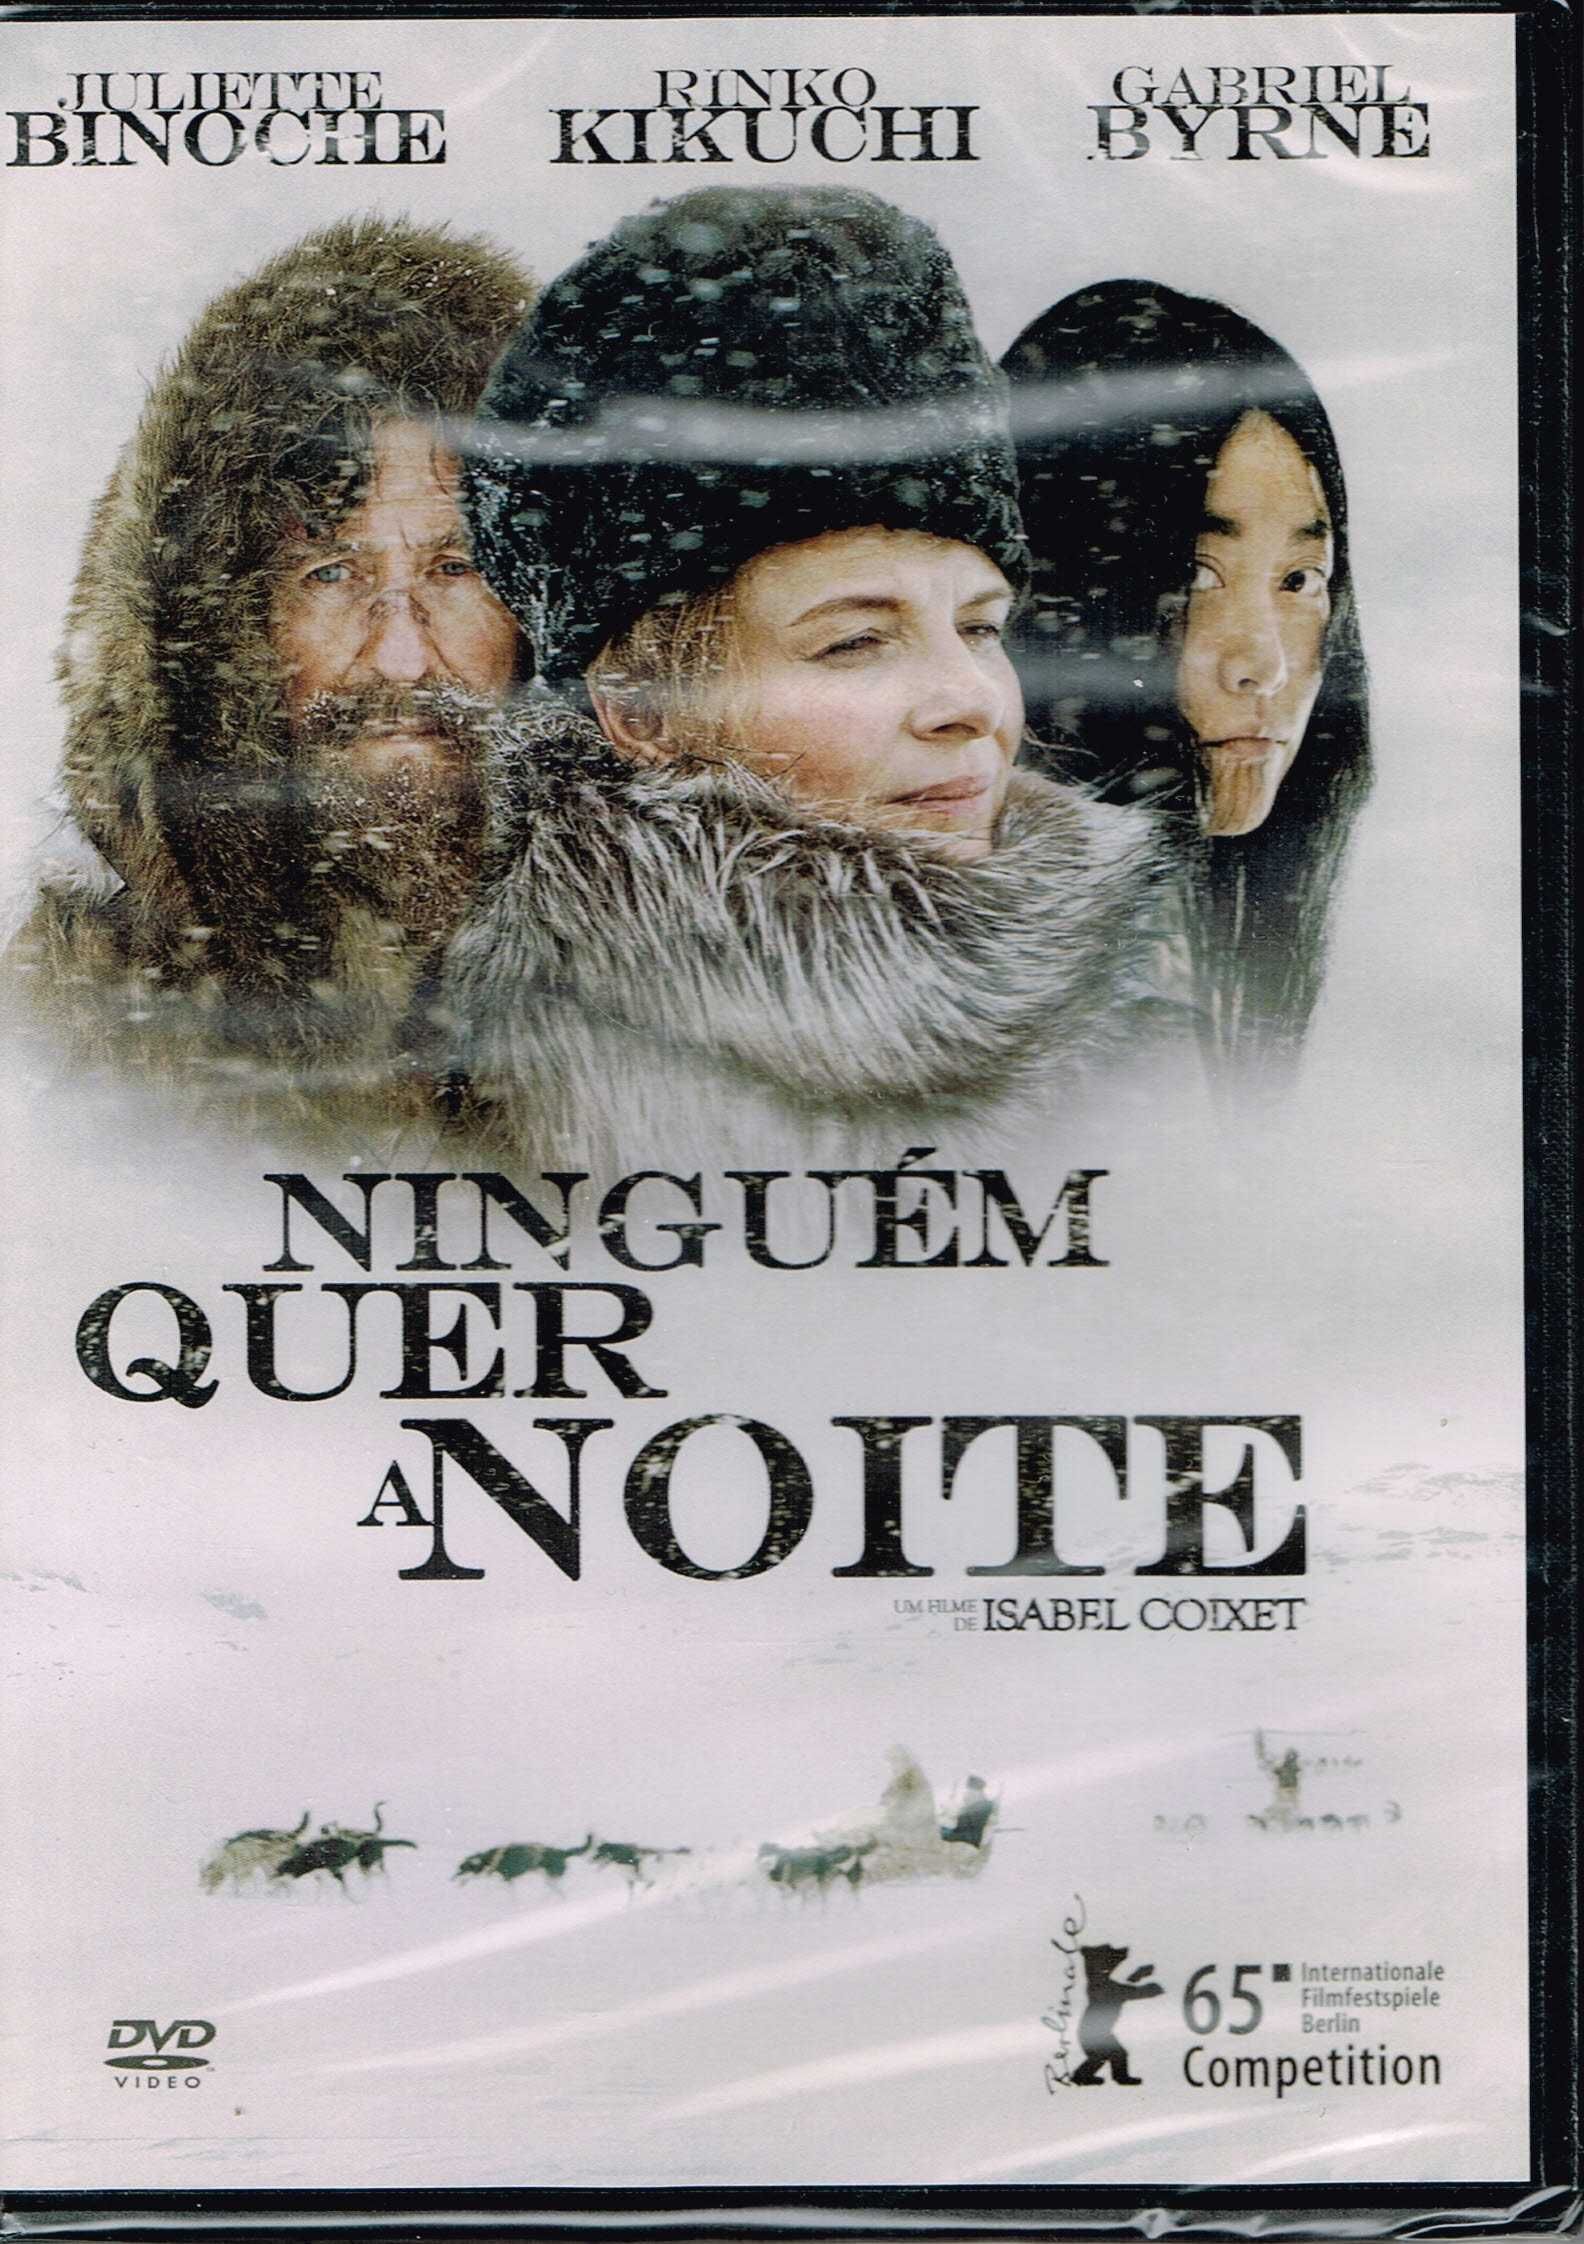 Filme em DVD: Ninguém Quer a Noite (Juliette Binoche) - NOVO! SELADO!